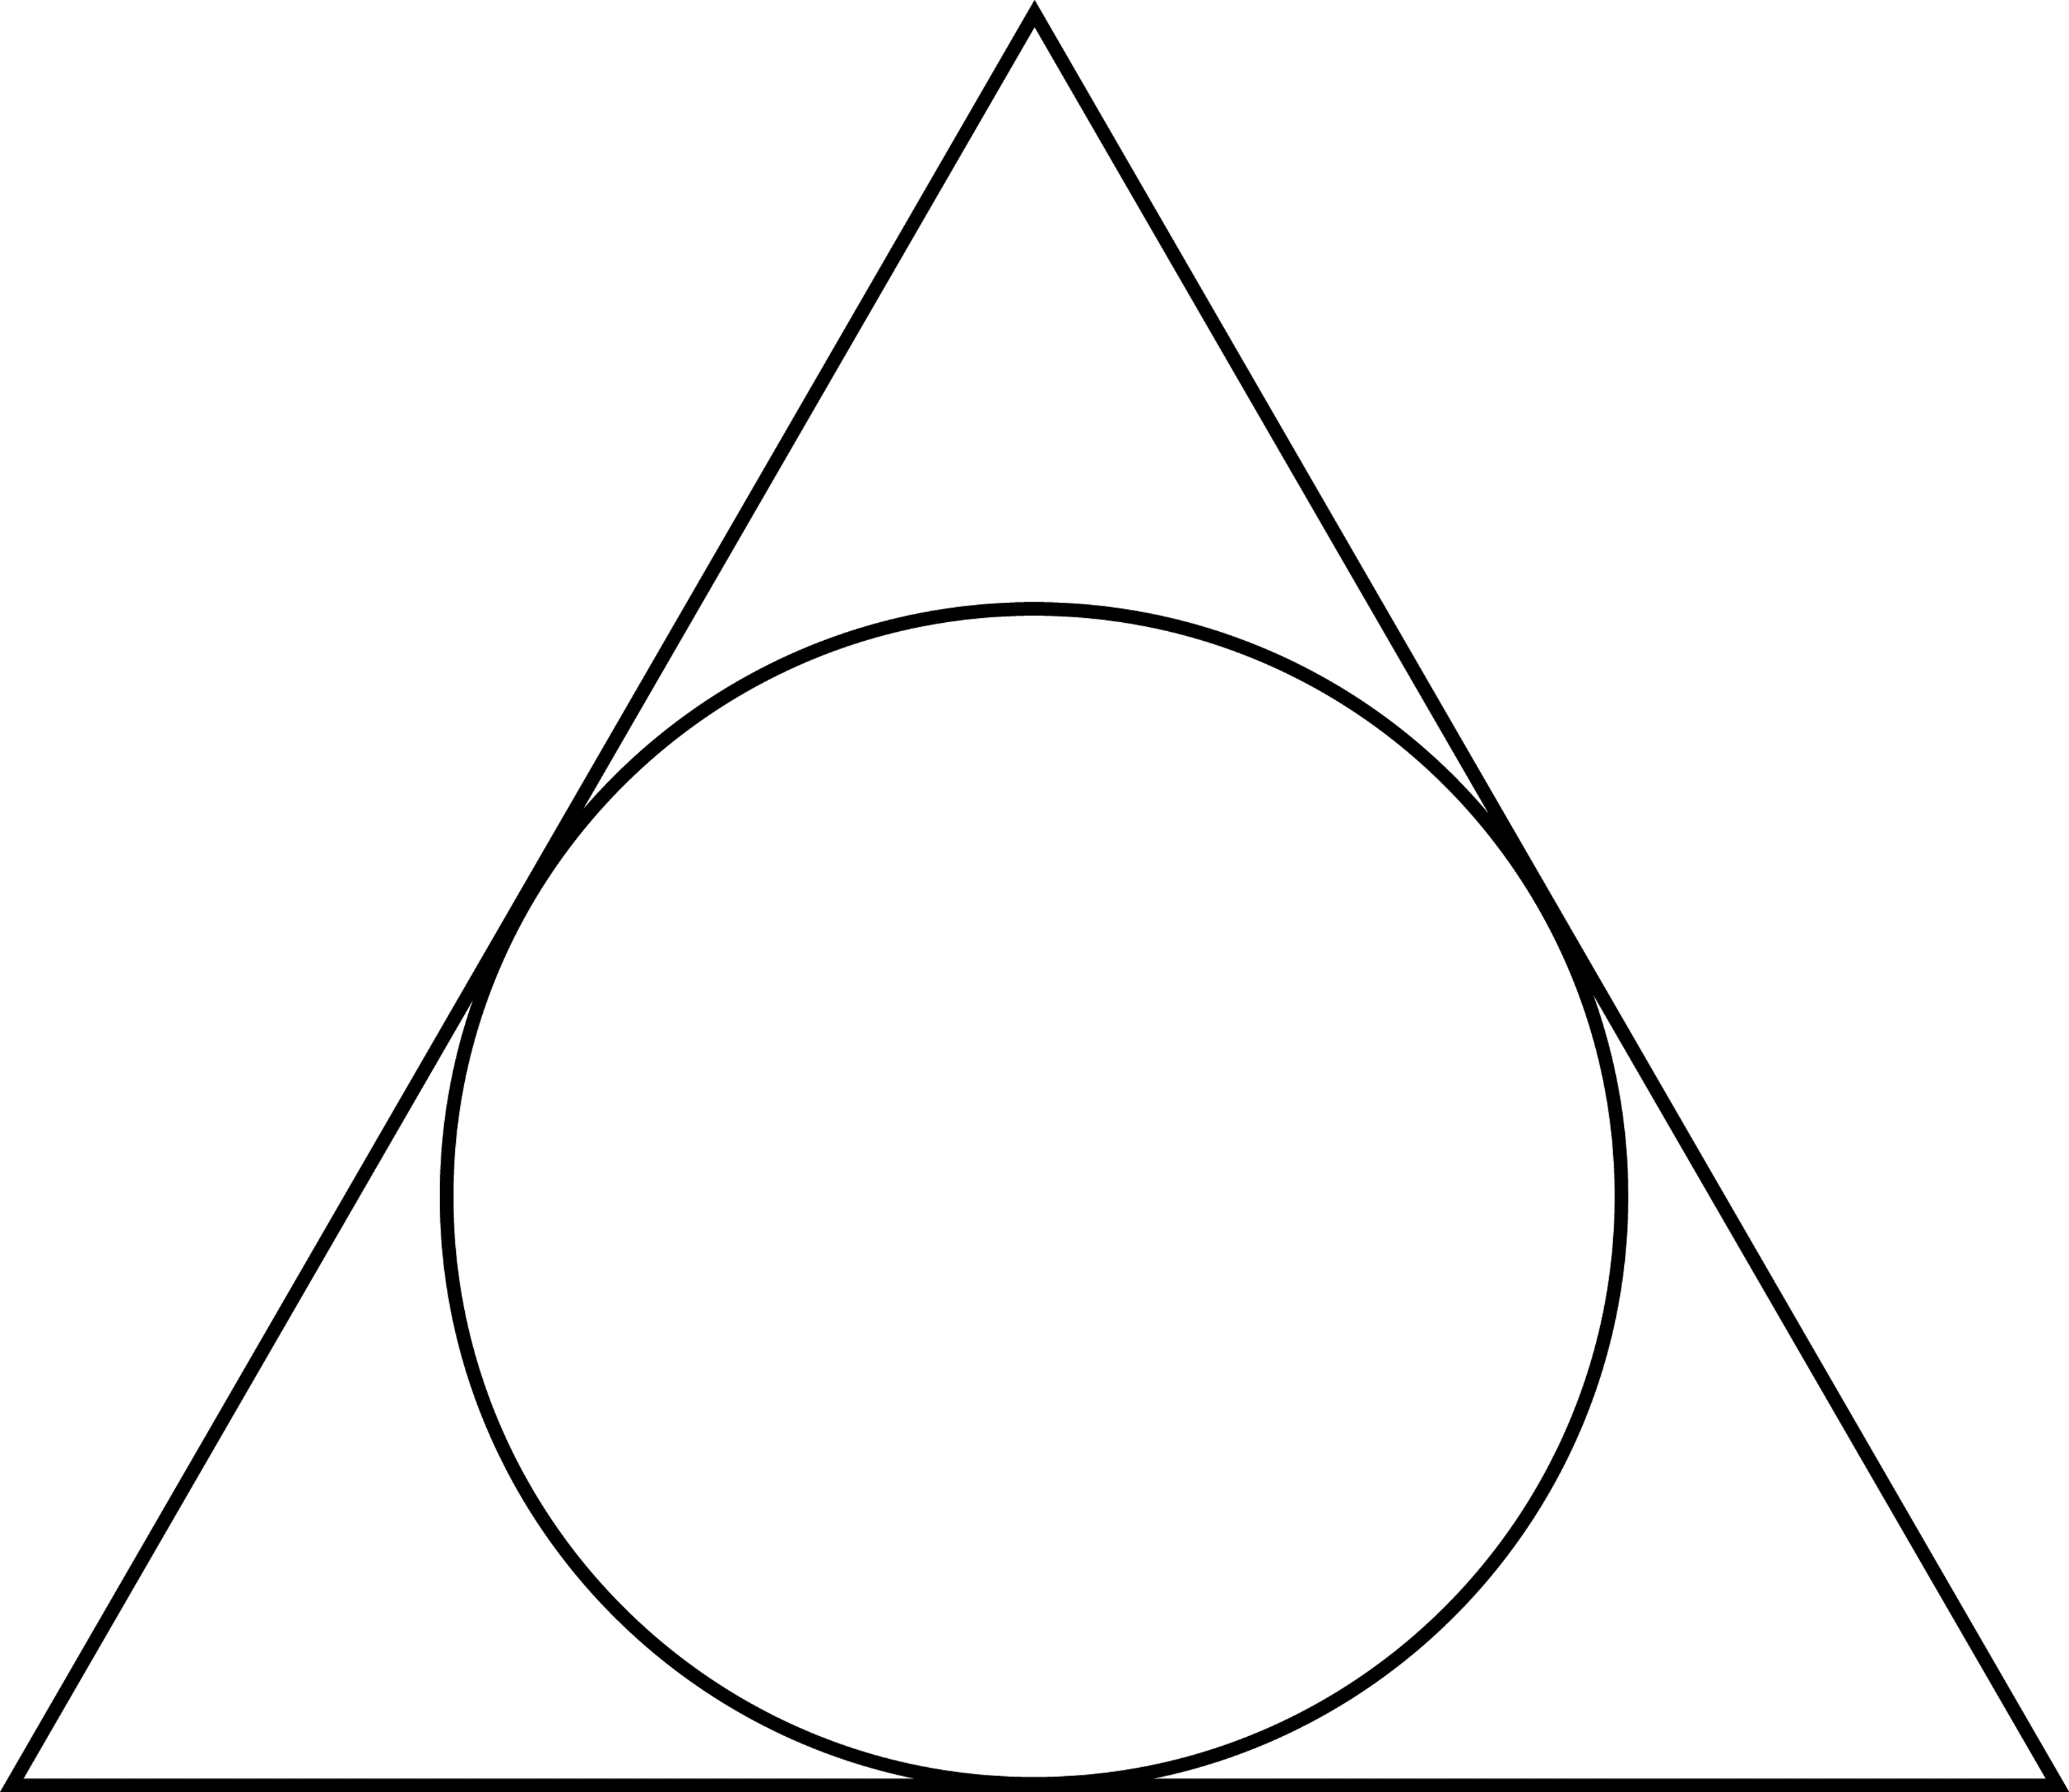 Круг с точкой в треугольнике. Треугольник в круге. Треугольник с кругом внутри. Равносторонний треугольник в круге. Вписанные фигуры.